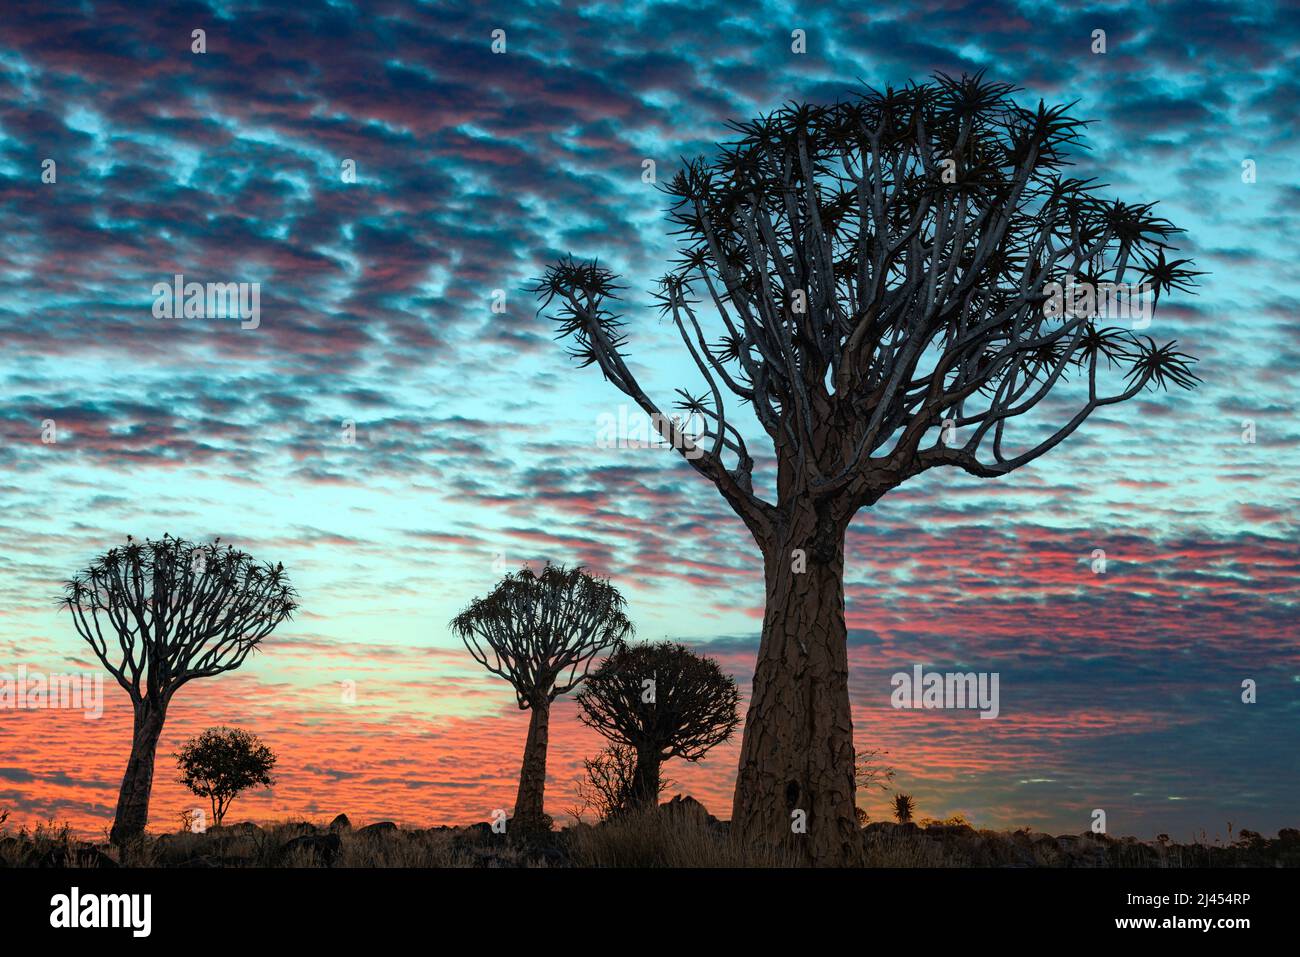 Köcherbäume (Aloe dichotoma) BEI Sonnenuntergang, Keetmanshoop, région de Karas, Namibie, Afrika Banque D'Images